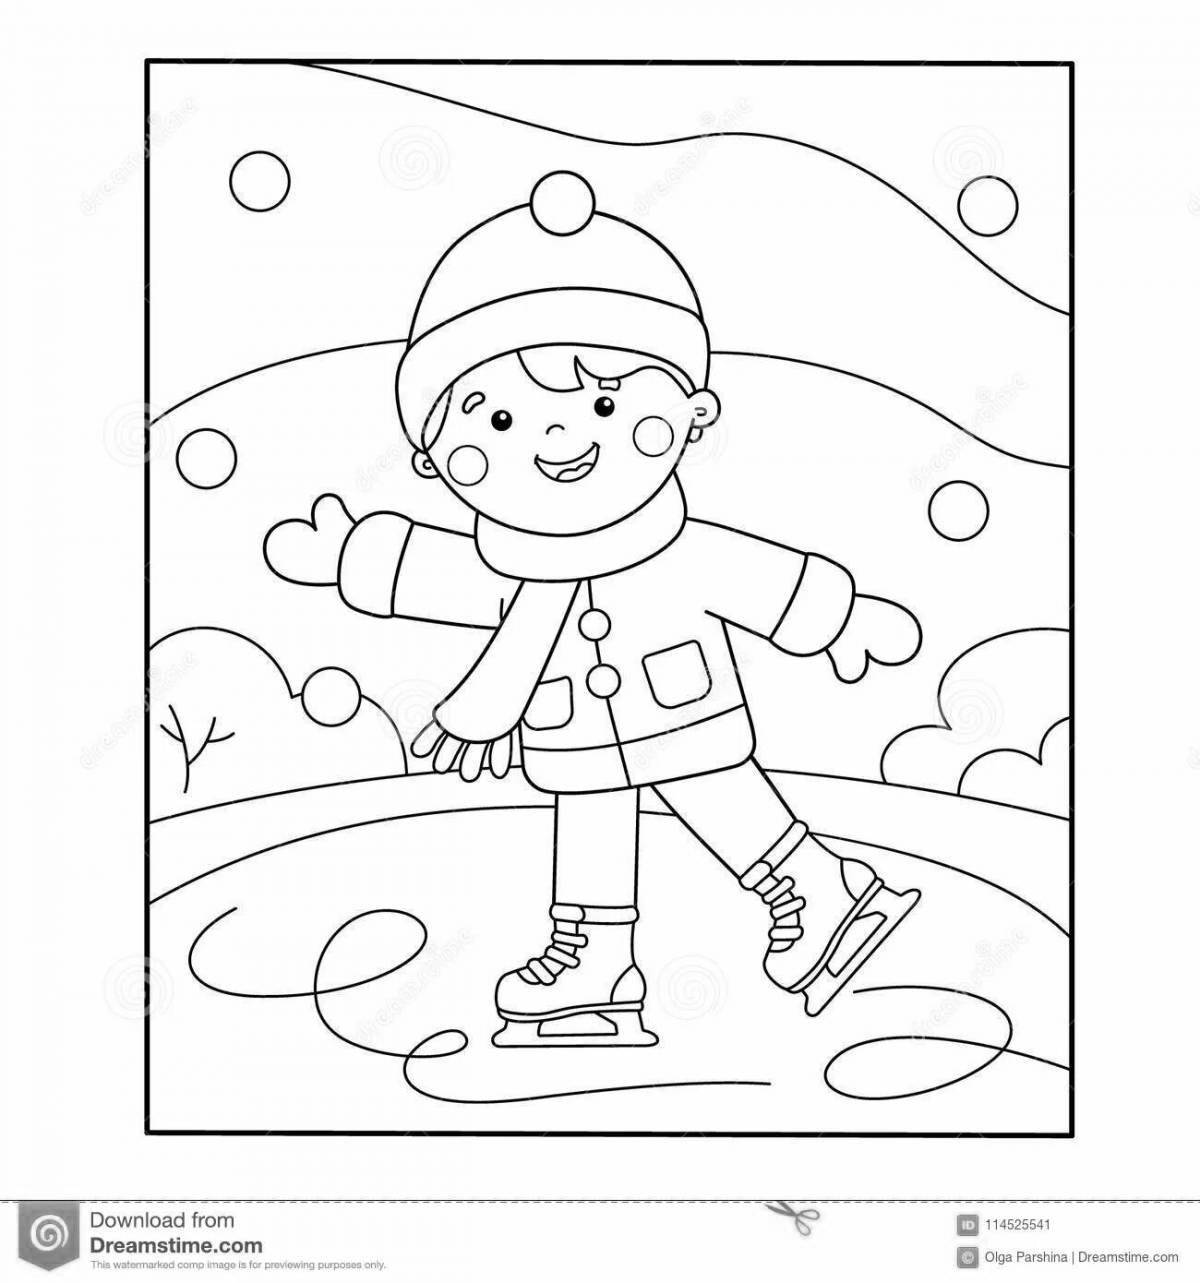 Игривая страница раскраски зимнего спорта для детей 6-7 лет